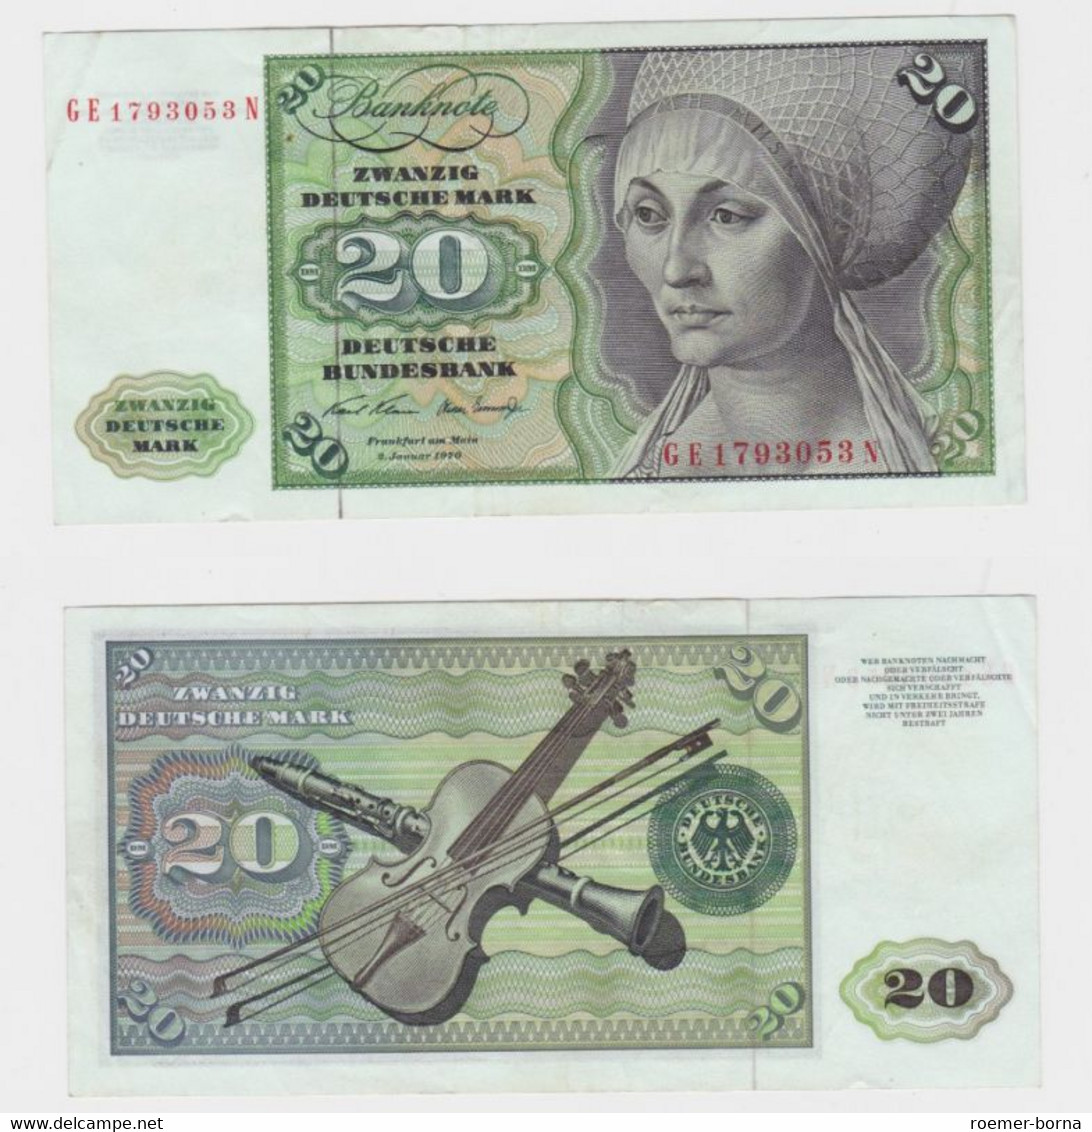 T145850 Banknote 20 DM Deutsche Mark Ro. 271b Schein 2.Jan. 1970 KN GE 1793053 N - 20 DM